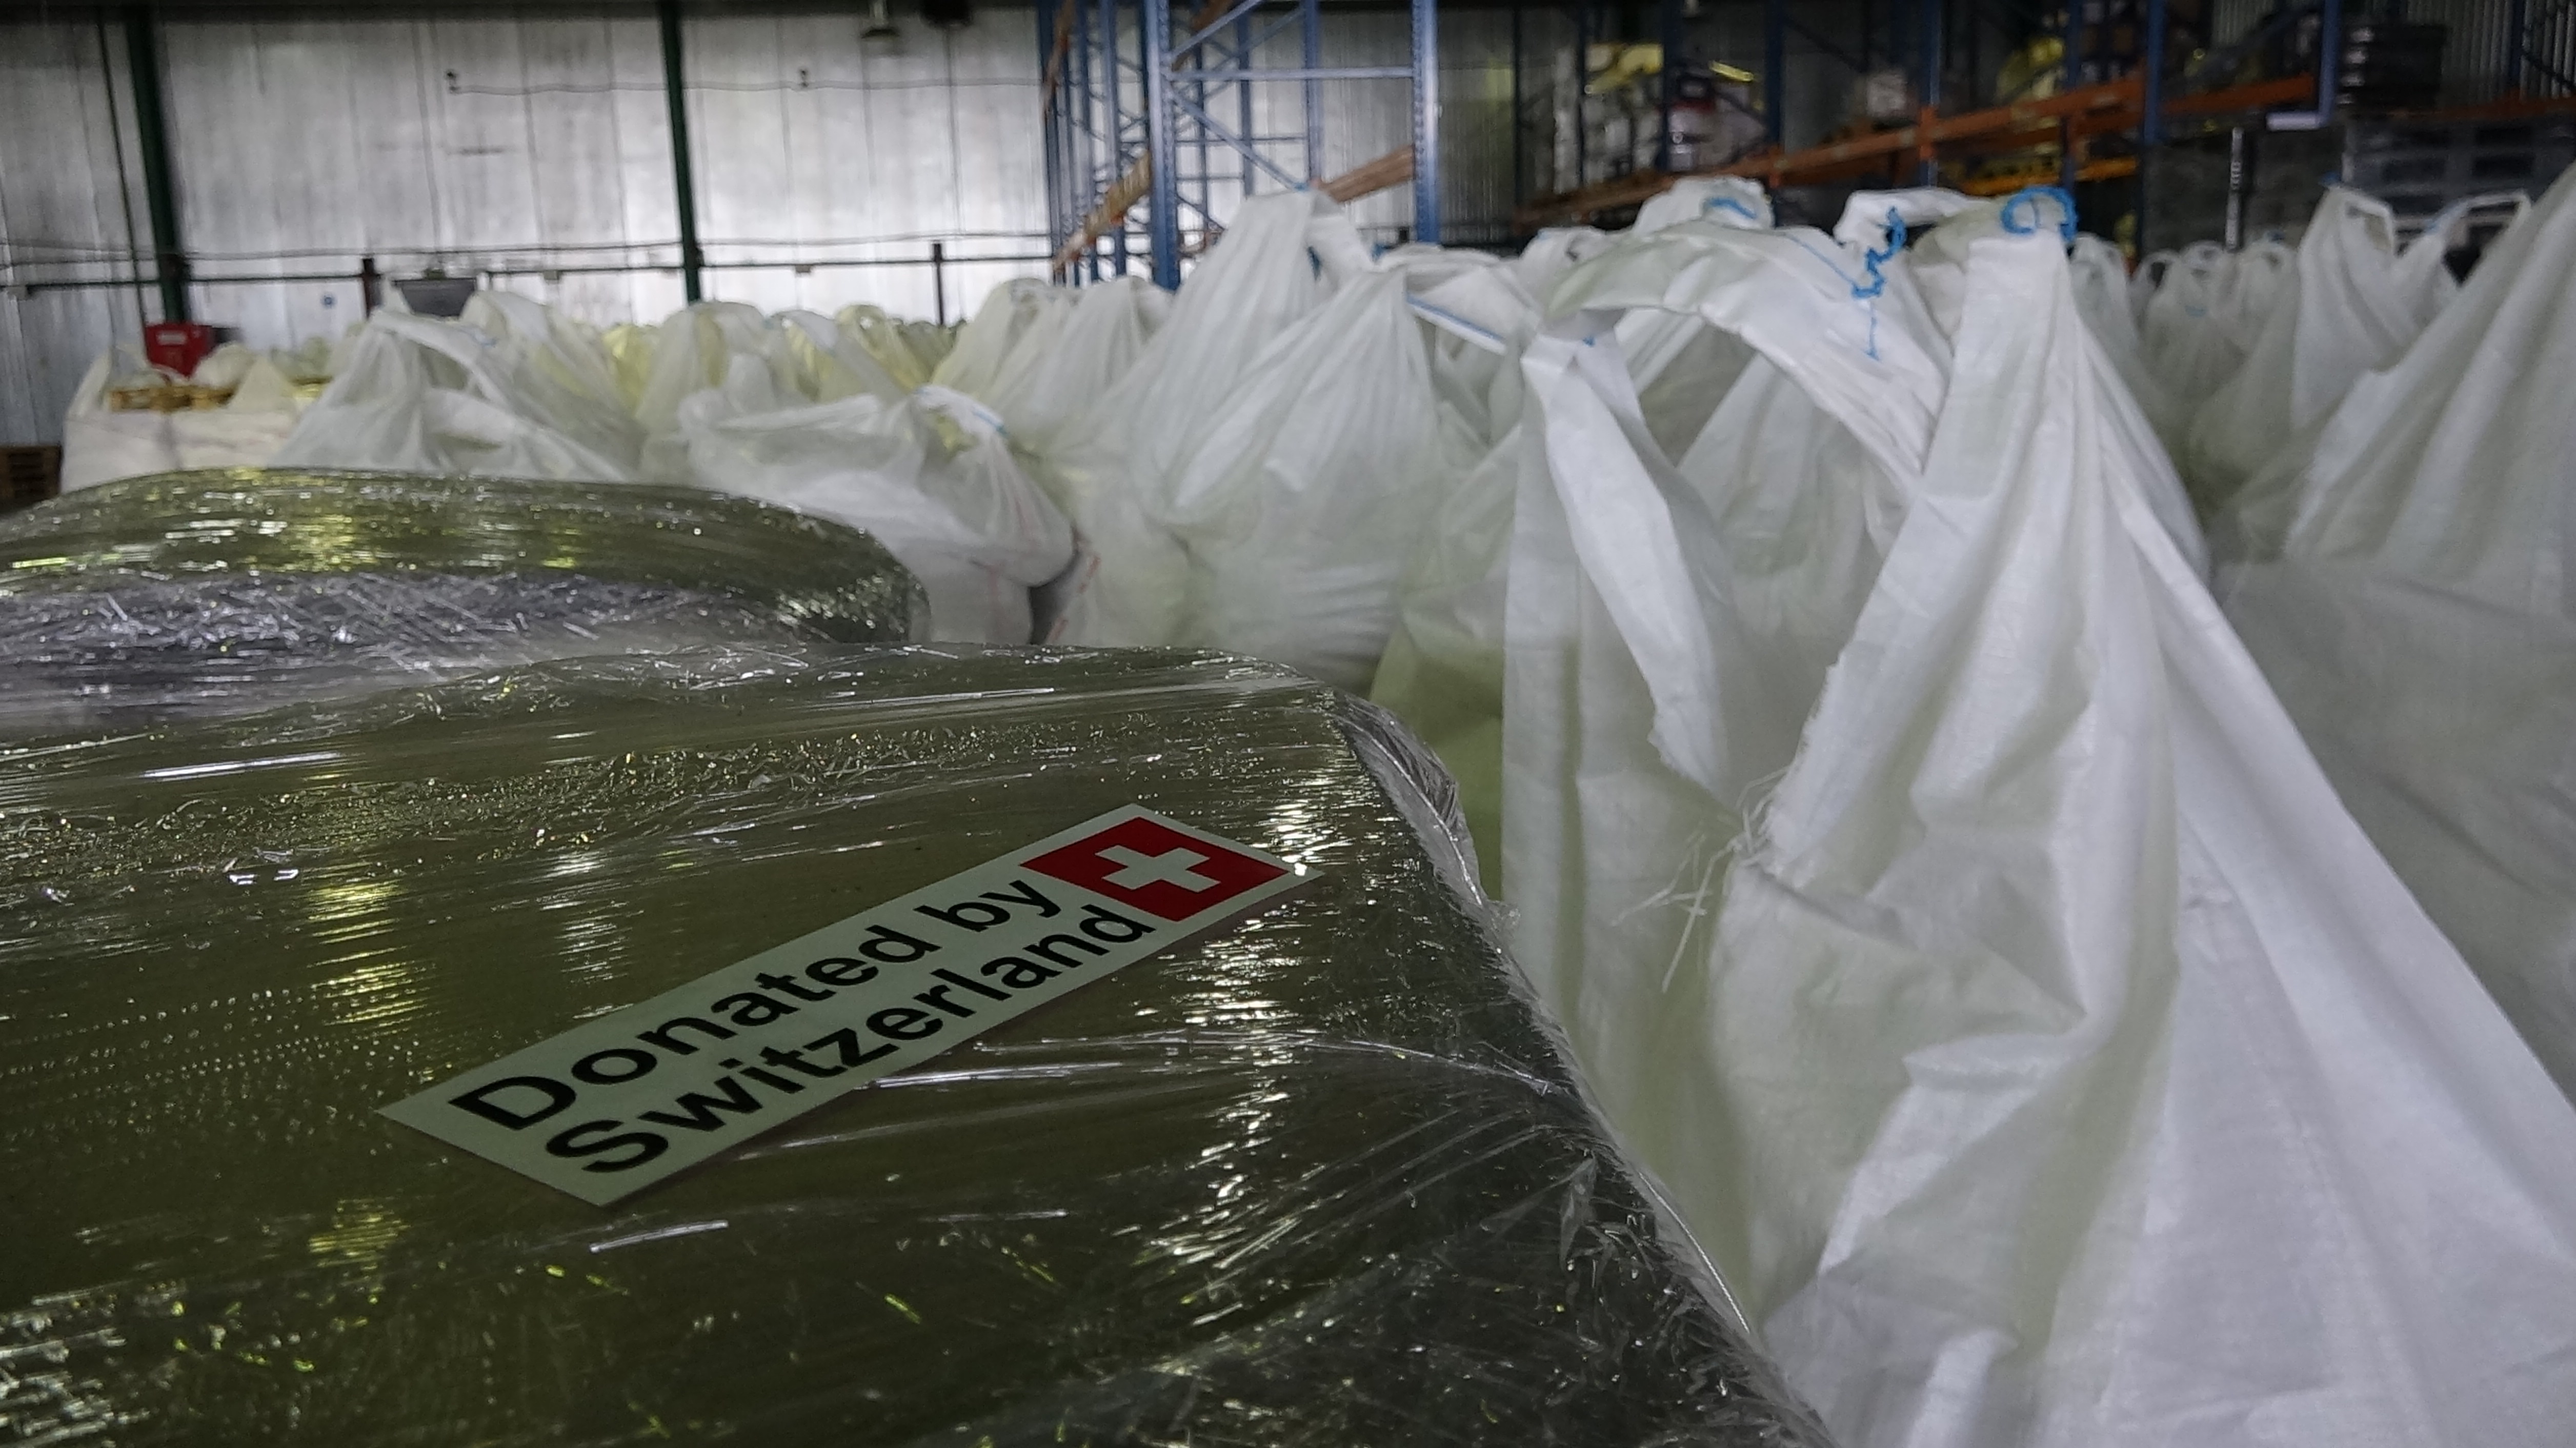 Der erste Schweizer Hilfskonvoi für die Menschen in der Ostukraine erreicht Donetsk. Die Schweiz hatte 300t chemische Produkten zur Trinkwasseraufbereitung geschickt.